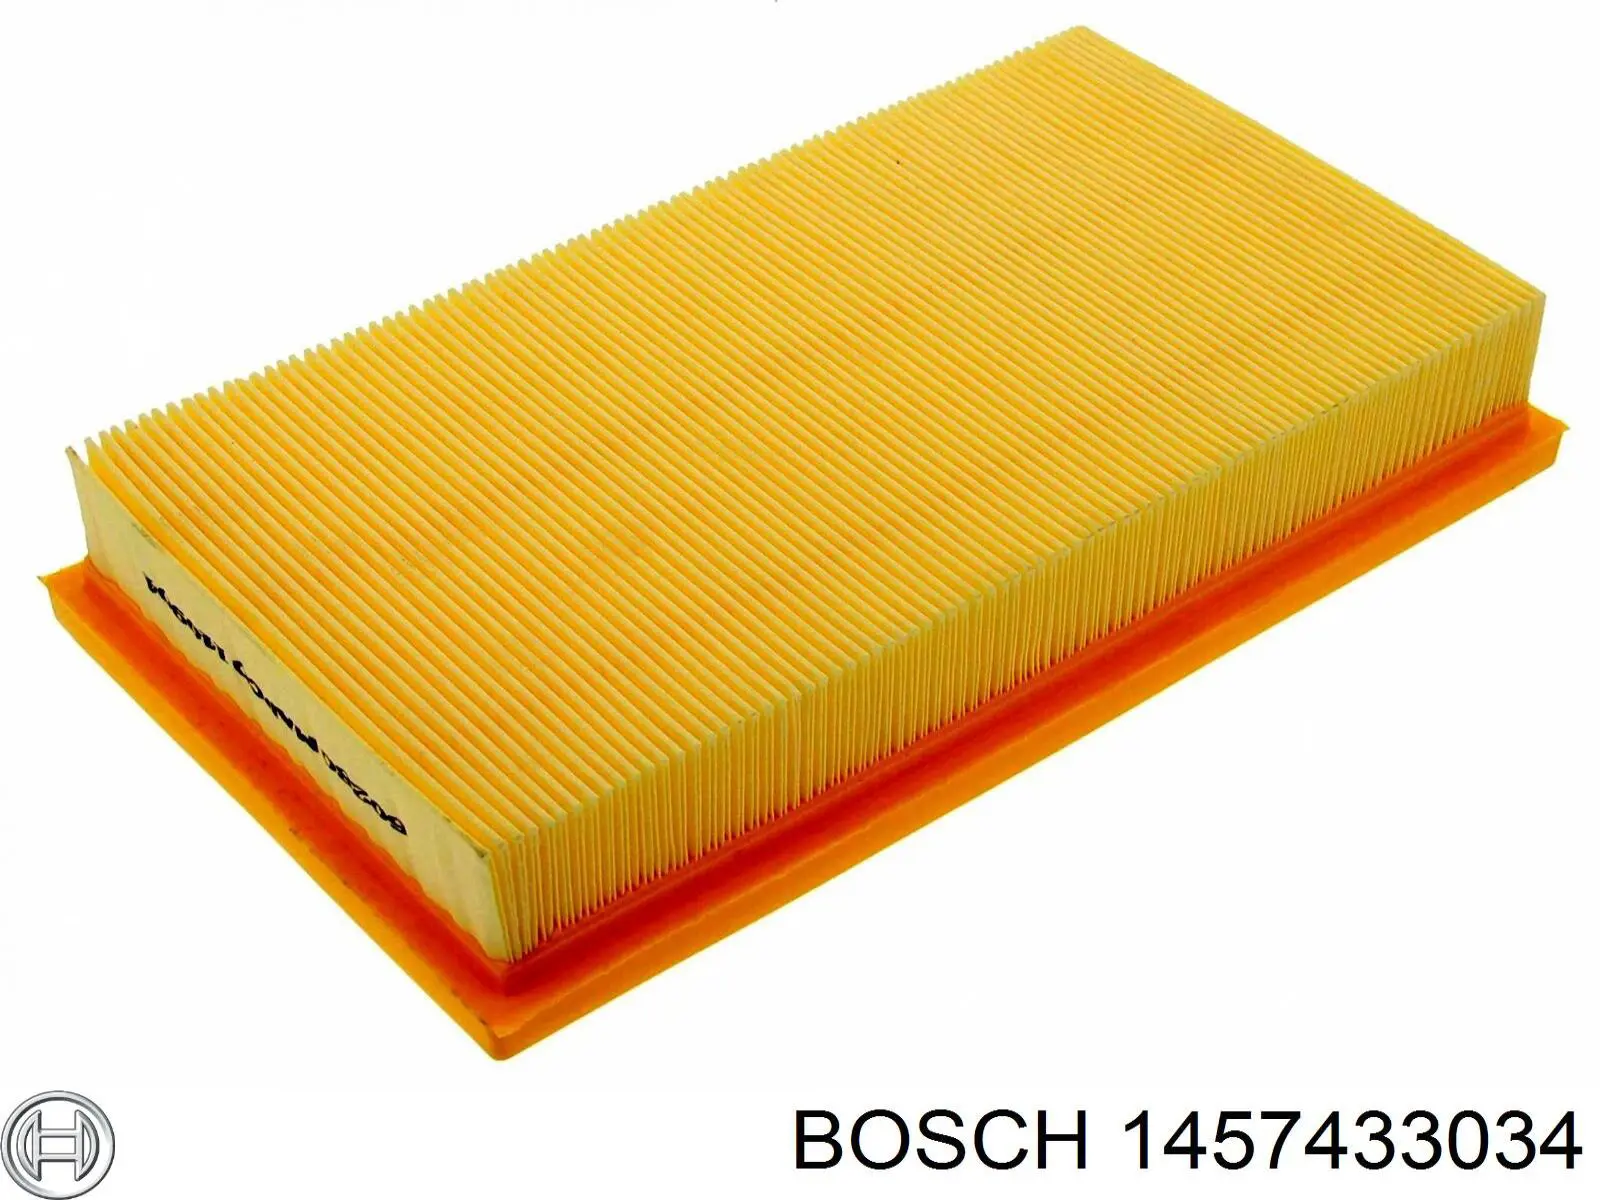 1457433034 Bosch filtro de aire